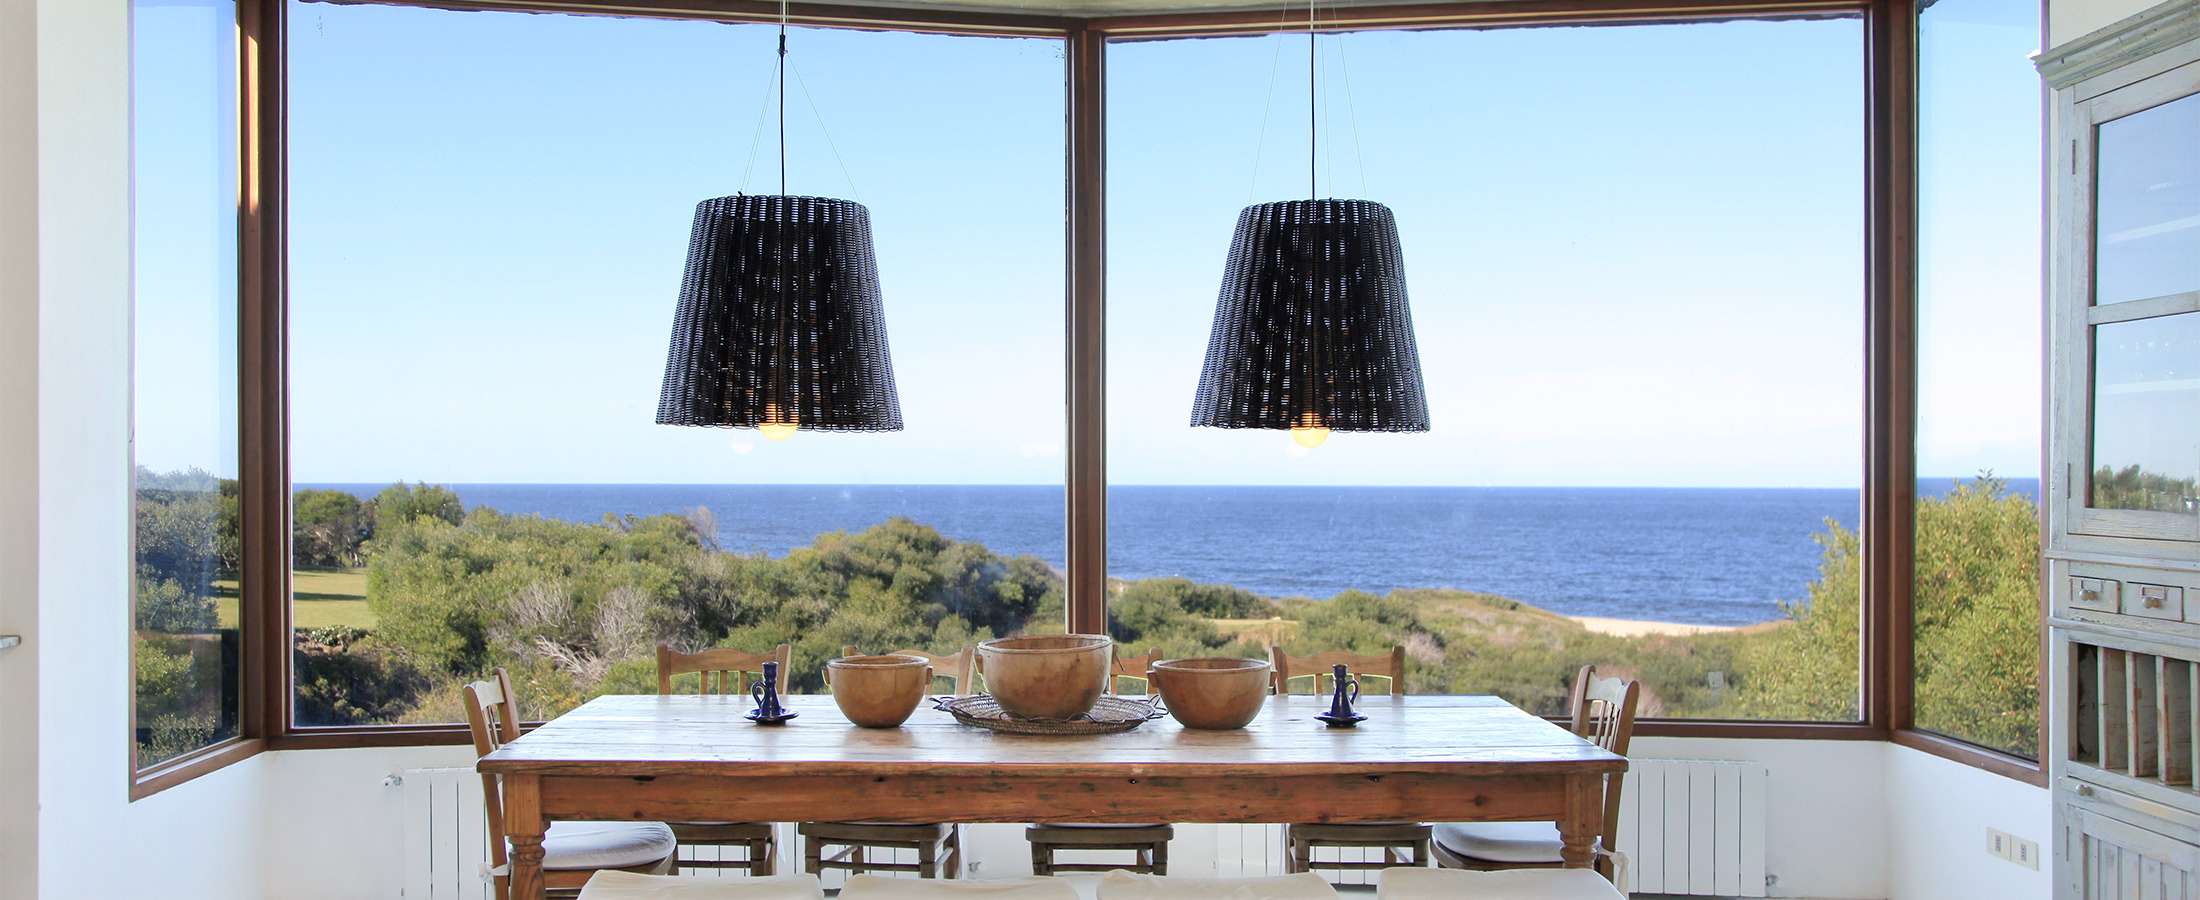 Duas lâmpadas em uma casa de frente para a praia e o mar no horizonte